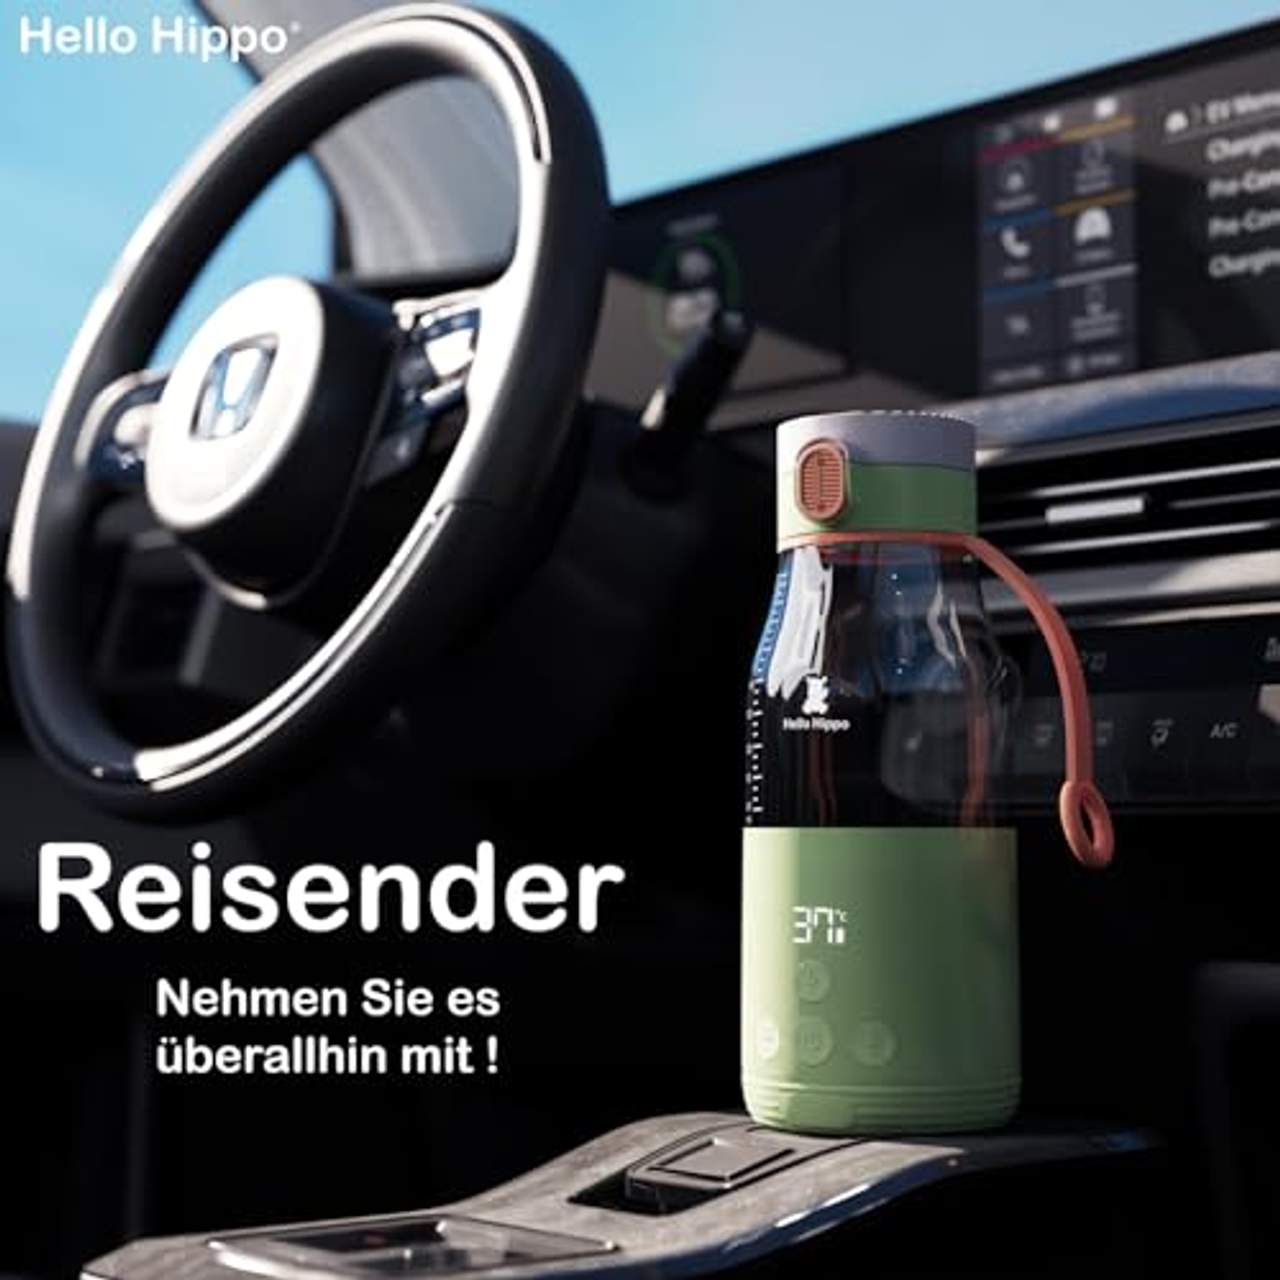 Hello Hippo Premium Flaschenwärmer Nomade USB-C